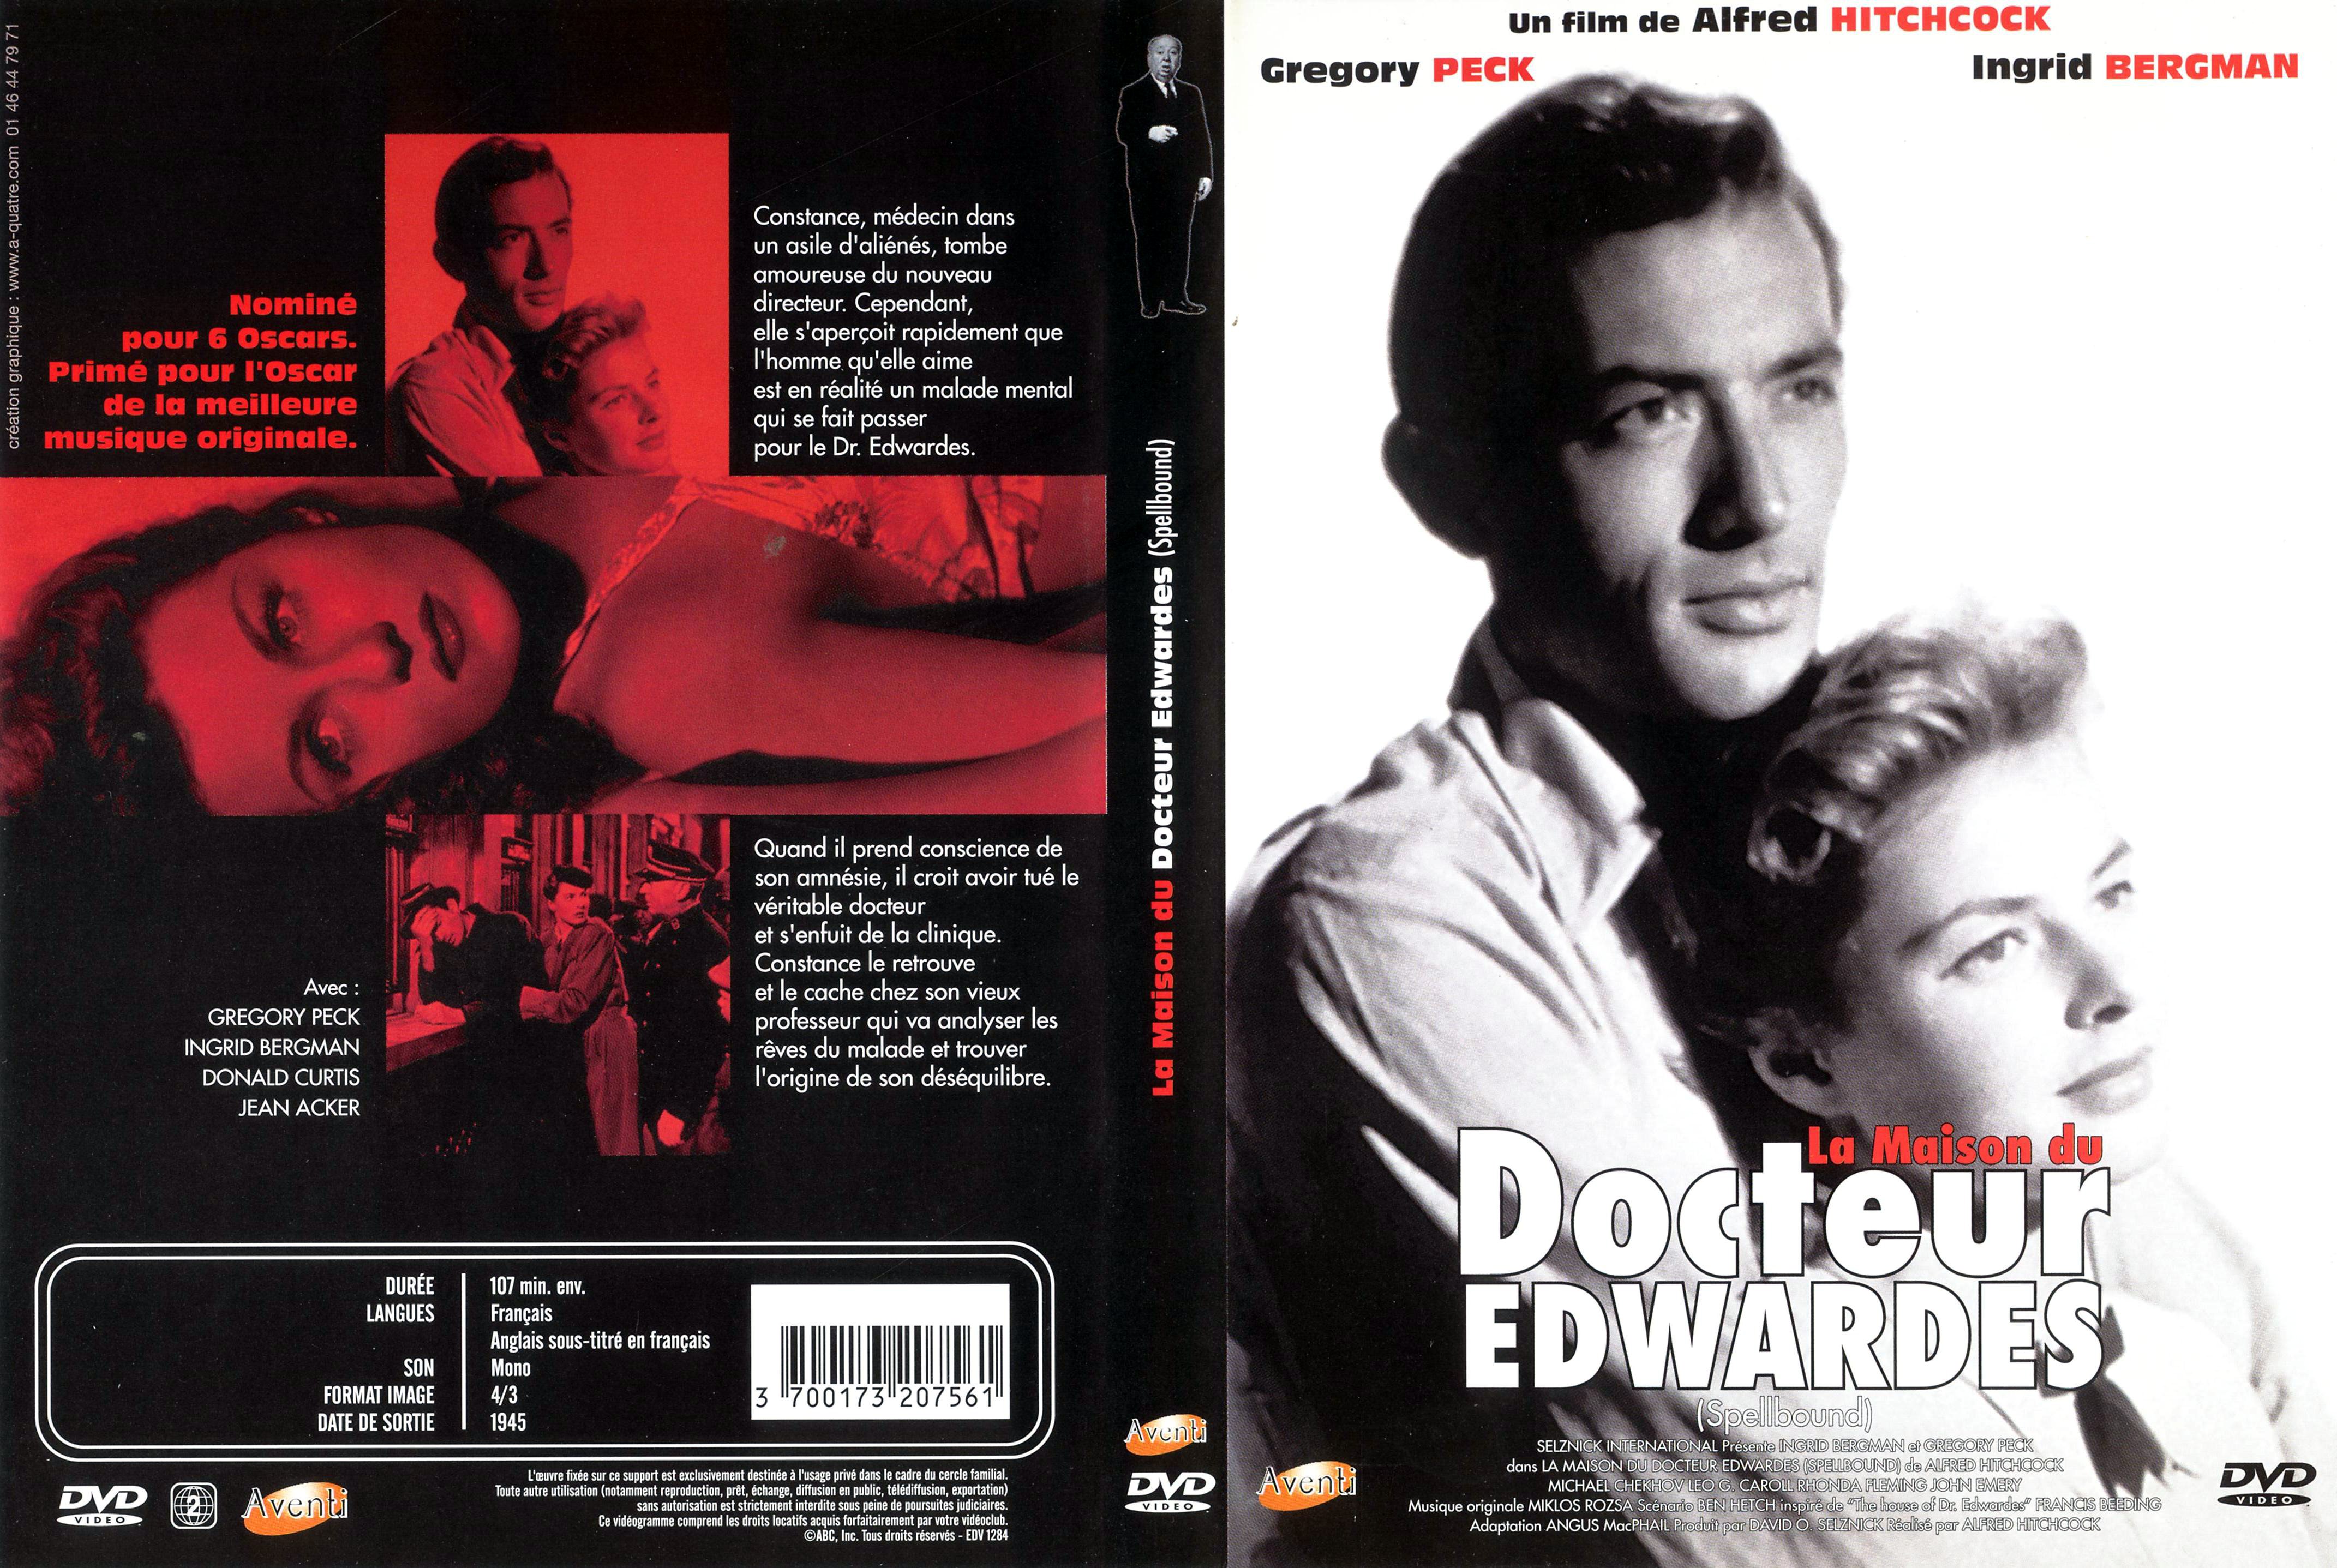 Jaquette DVD La maison du docteur Edwardes v2